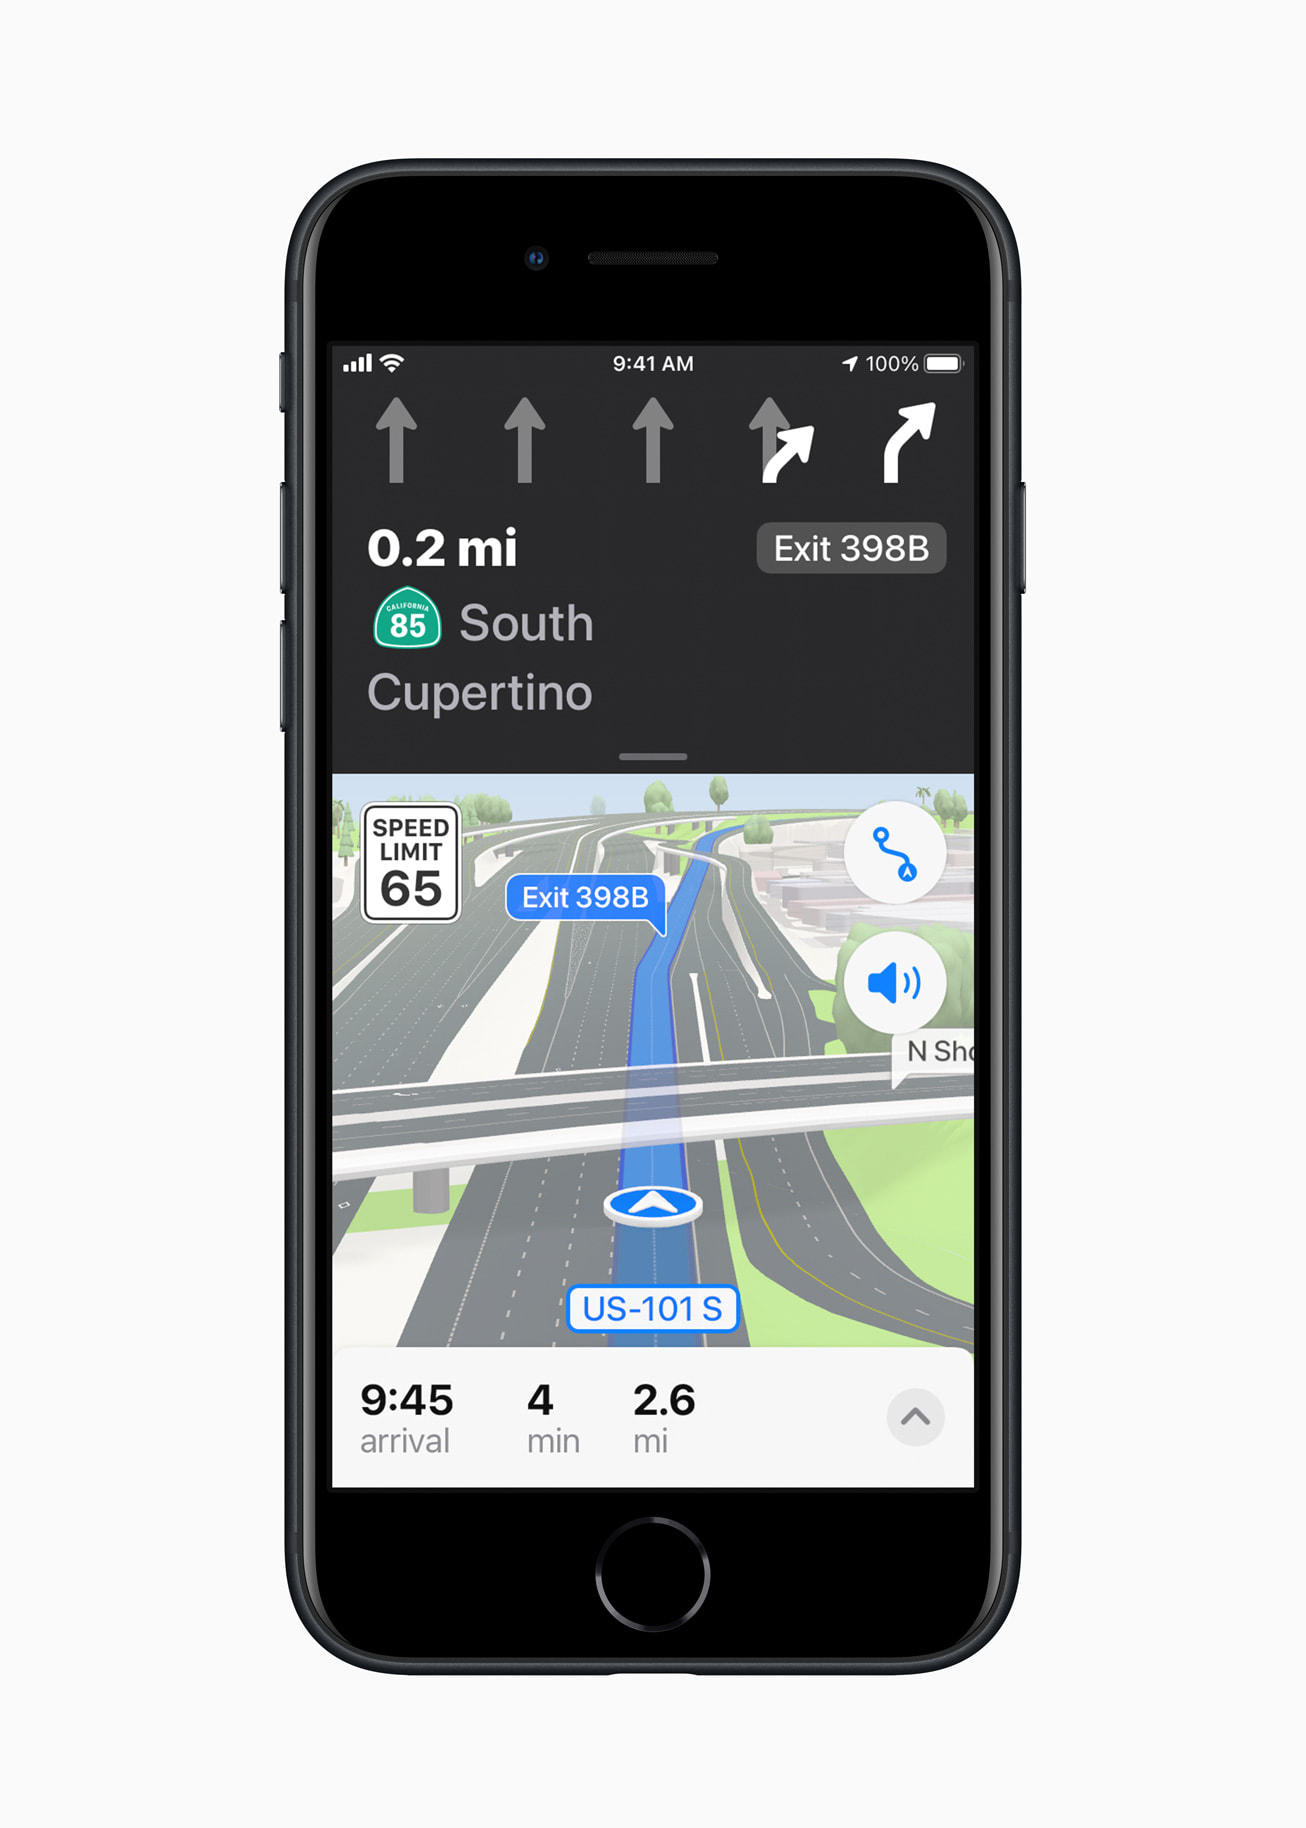 نیا آئی فون آدھی رات کے اختتام پر ہے ، جس میں آئی او ایس 15 کے نئے منصوبوں کی خصوصیت کی نمائش کی گئی ہے ، جو تین جہتوں میں شہری ڈرائیونگ کا تجربہ پیش کرتا ہے۔